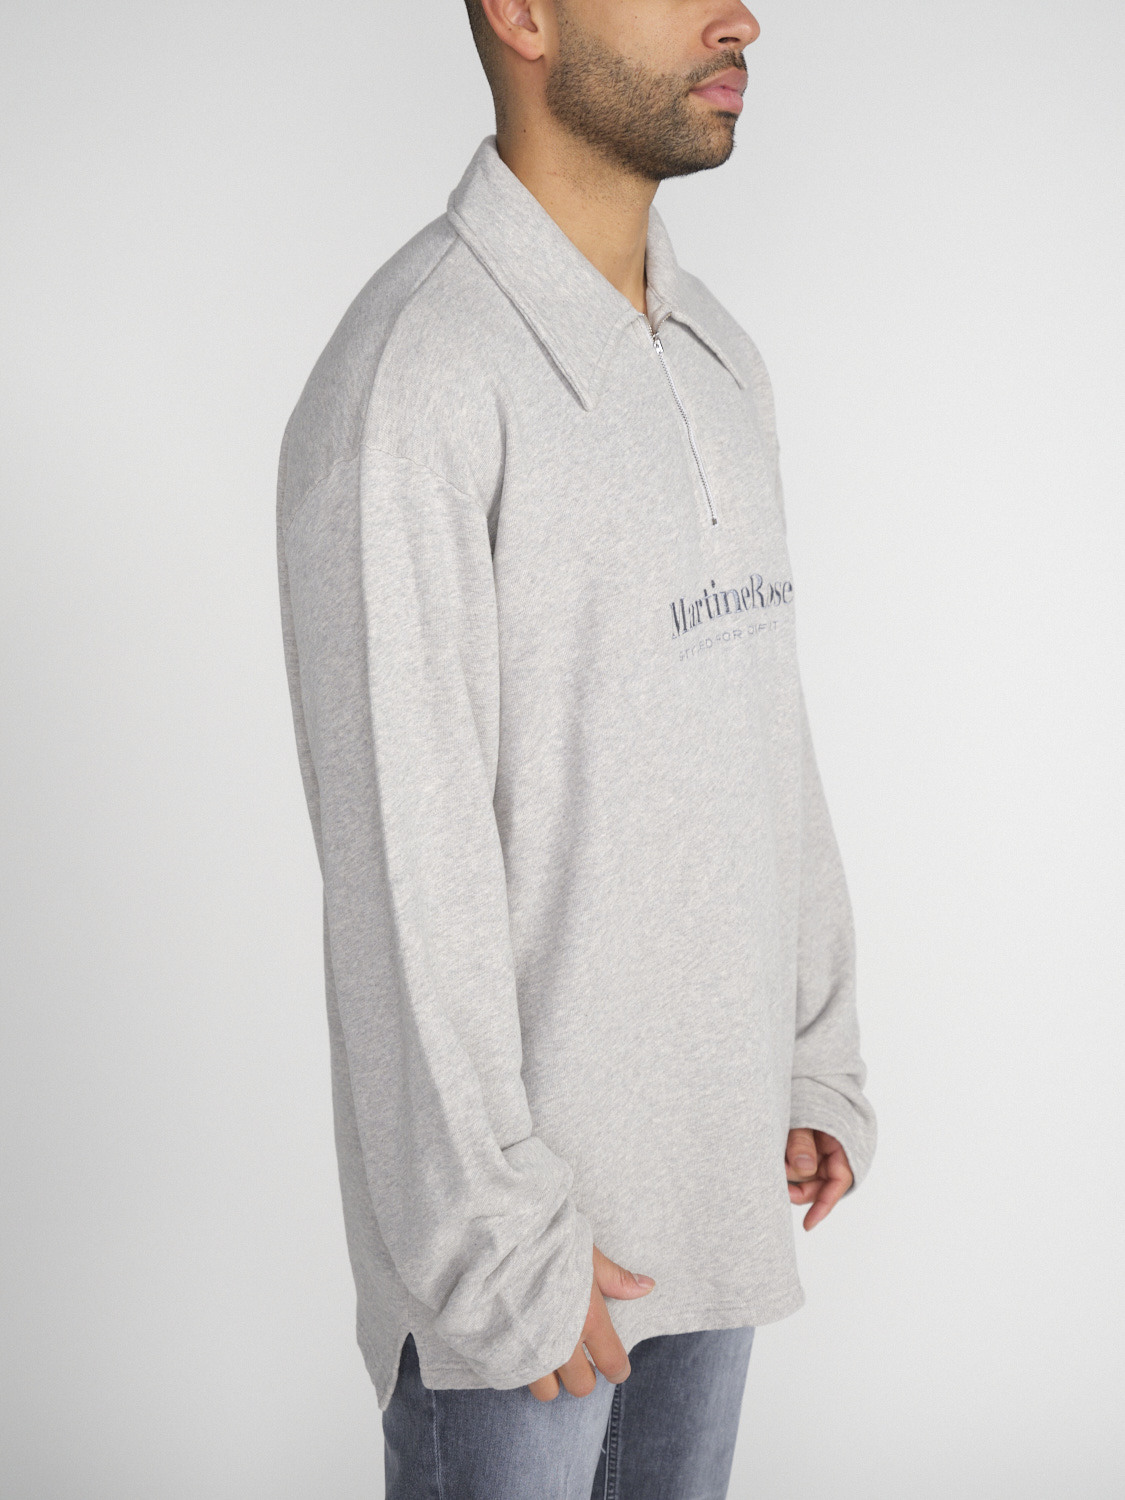 Martine Rose Zip Up – Oversized Sweatshirt with Zipper   grey XS